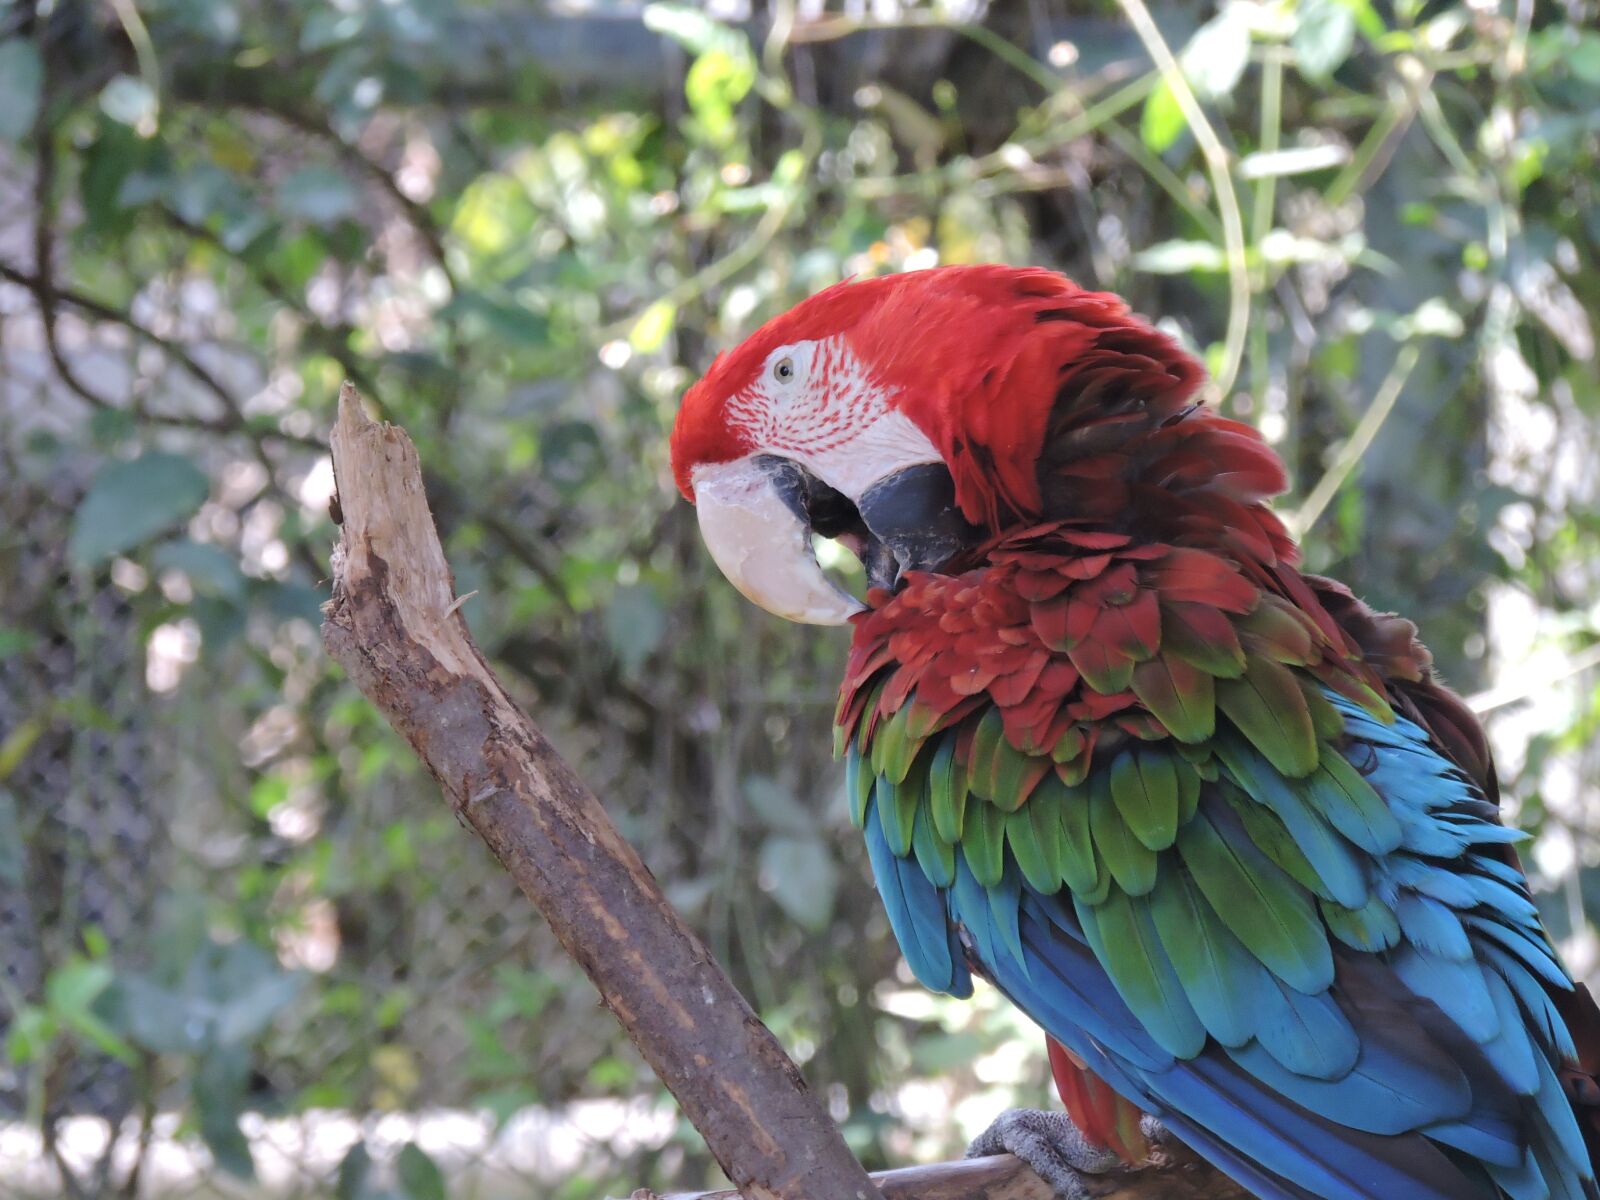 Nikon Coolpix P530 sample photo. Parrot, gucamaya, colorful photography